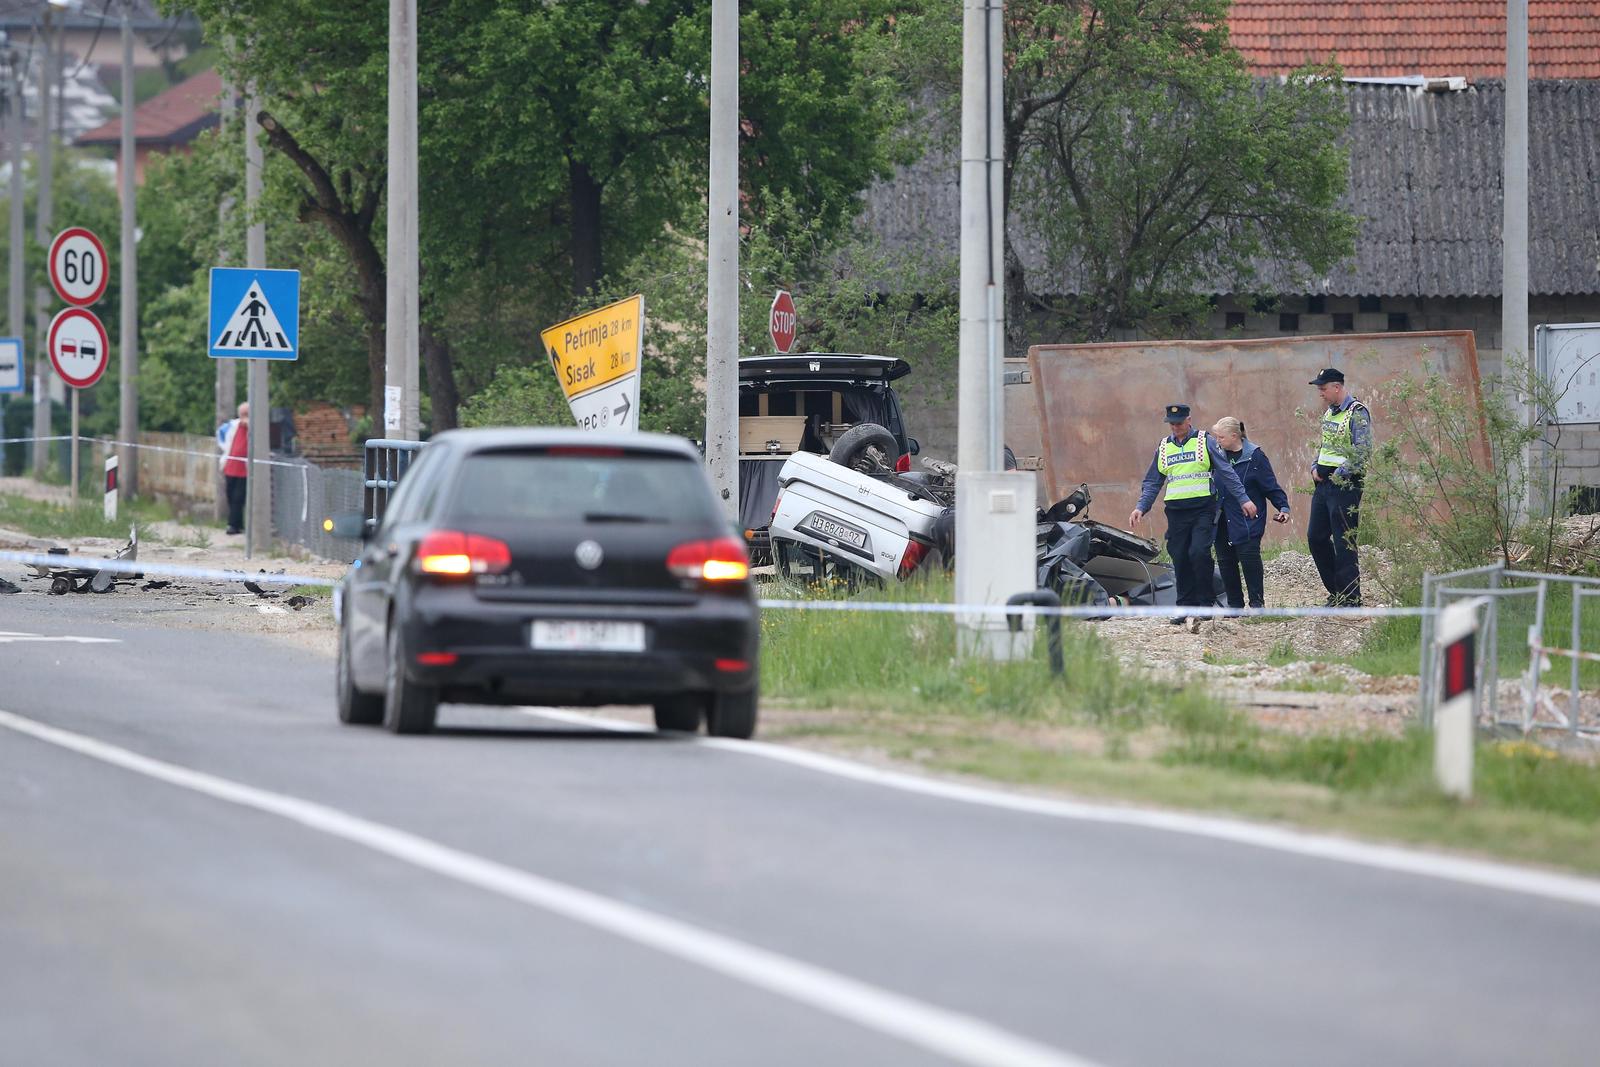 07.05.2022., Velika Gorica - Prometna nesreca kod mjesta Ogulinec, tri osobe poginule u slijetanju automobila s ceste. Ocevid je u tijeku. Photo: Matija Habljak/PIXSELL